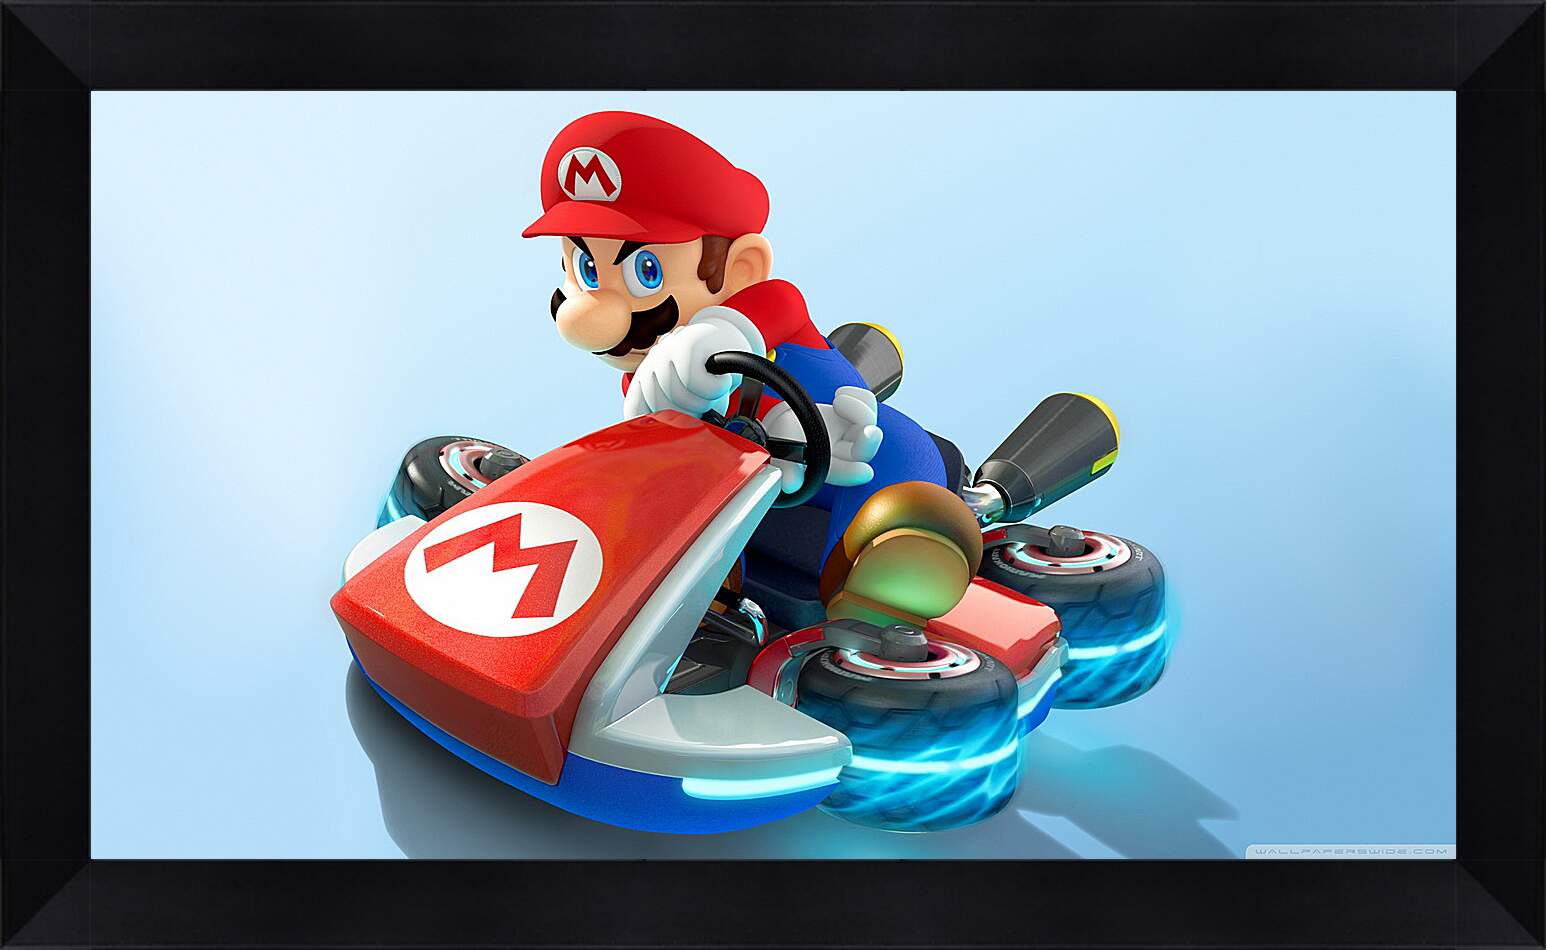 Картина в раме - Mario Kart 8
